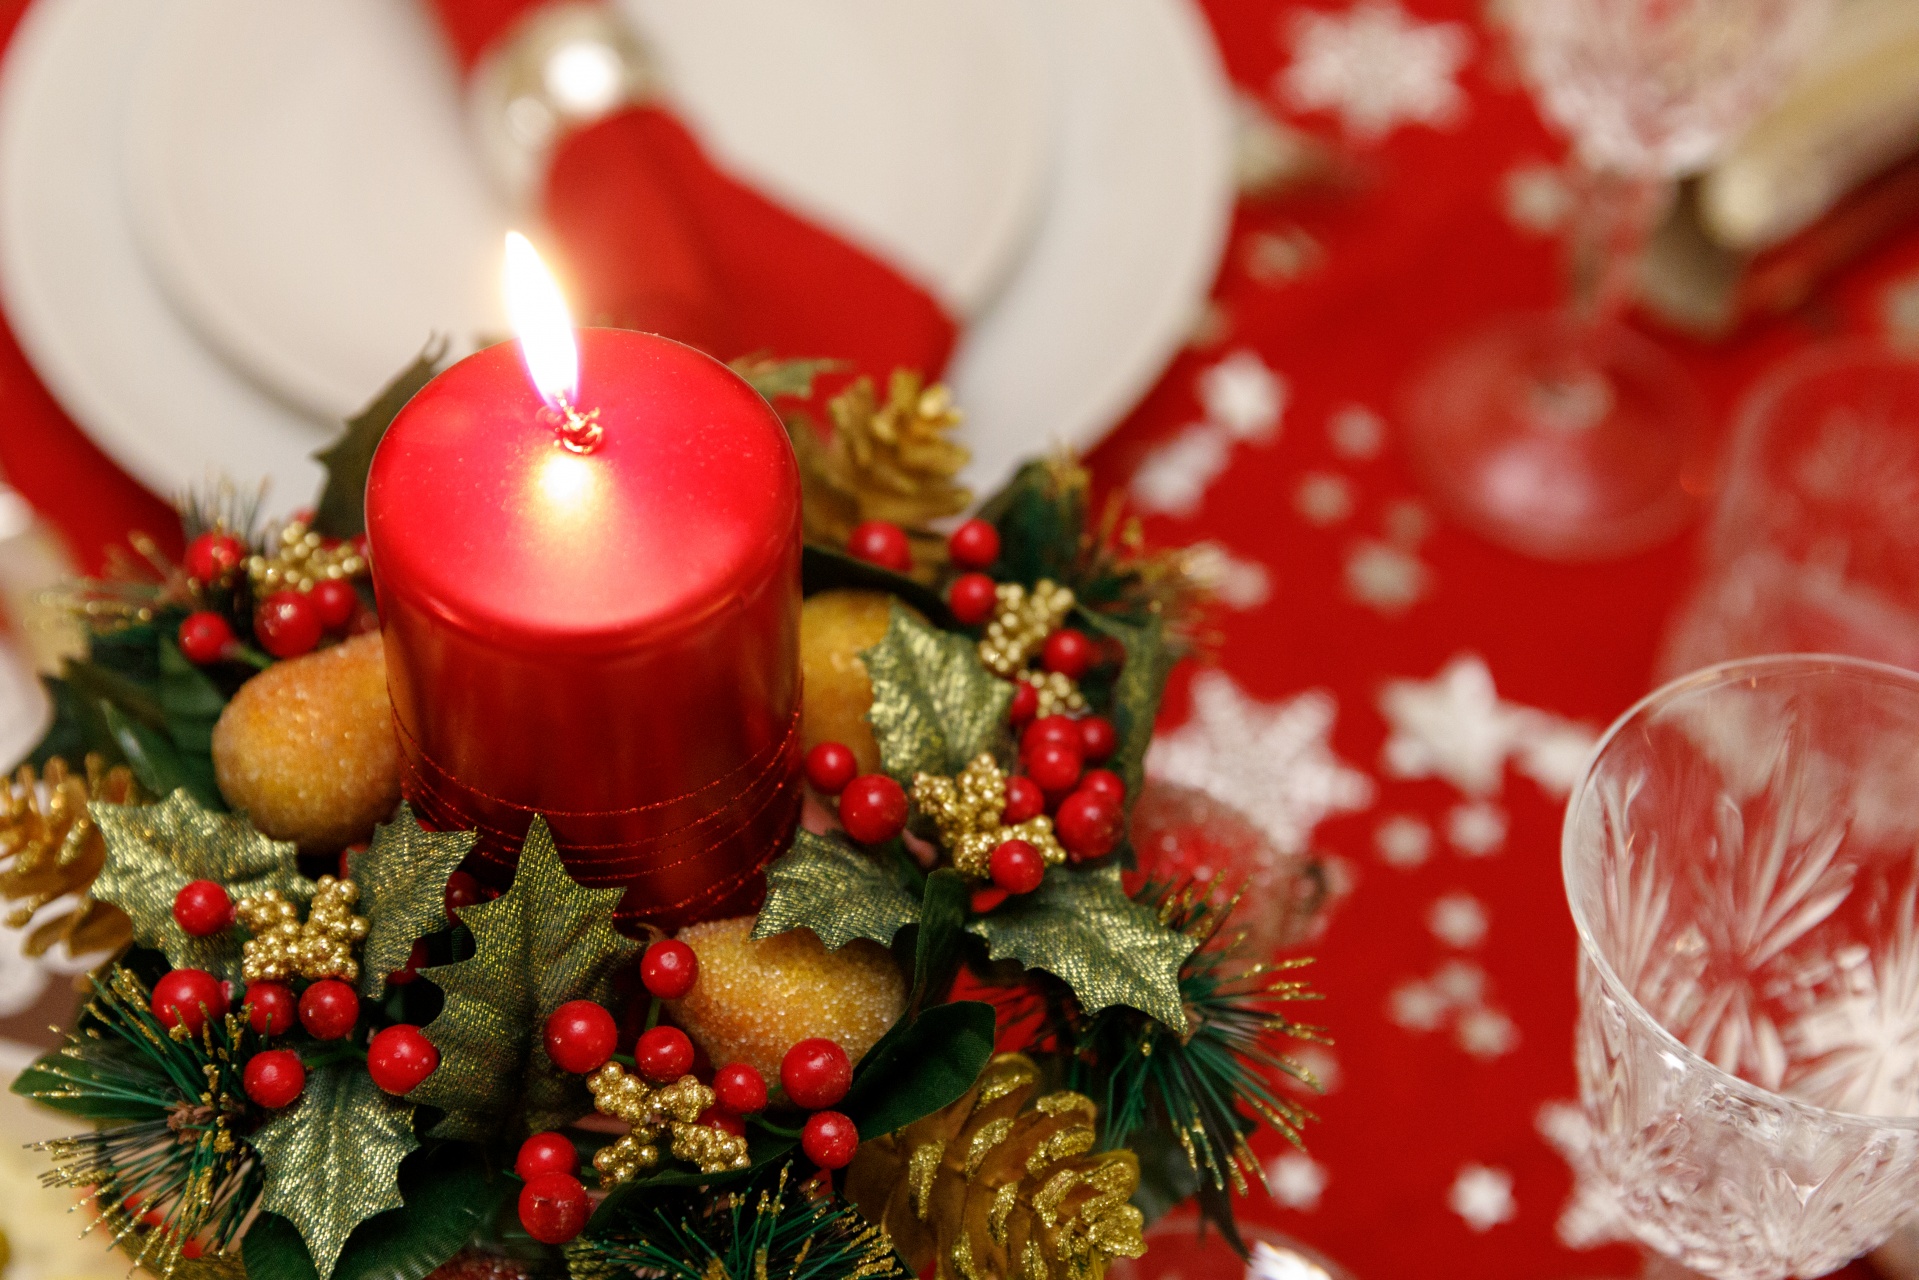 Kerze auf einem Weihnachtstisch Kostenloses Stock Bild - Public Domain ...